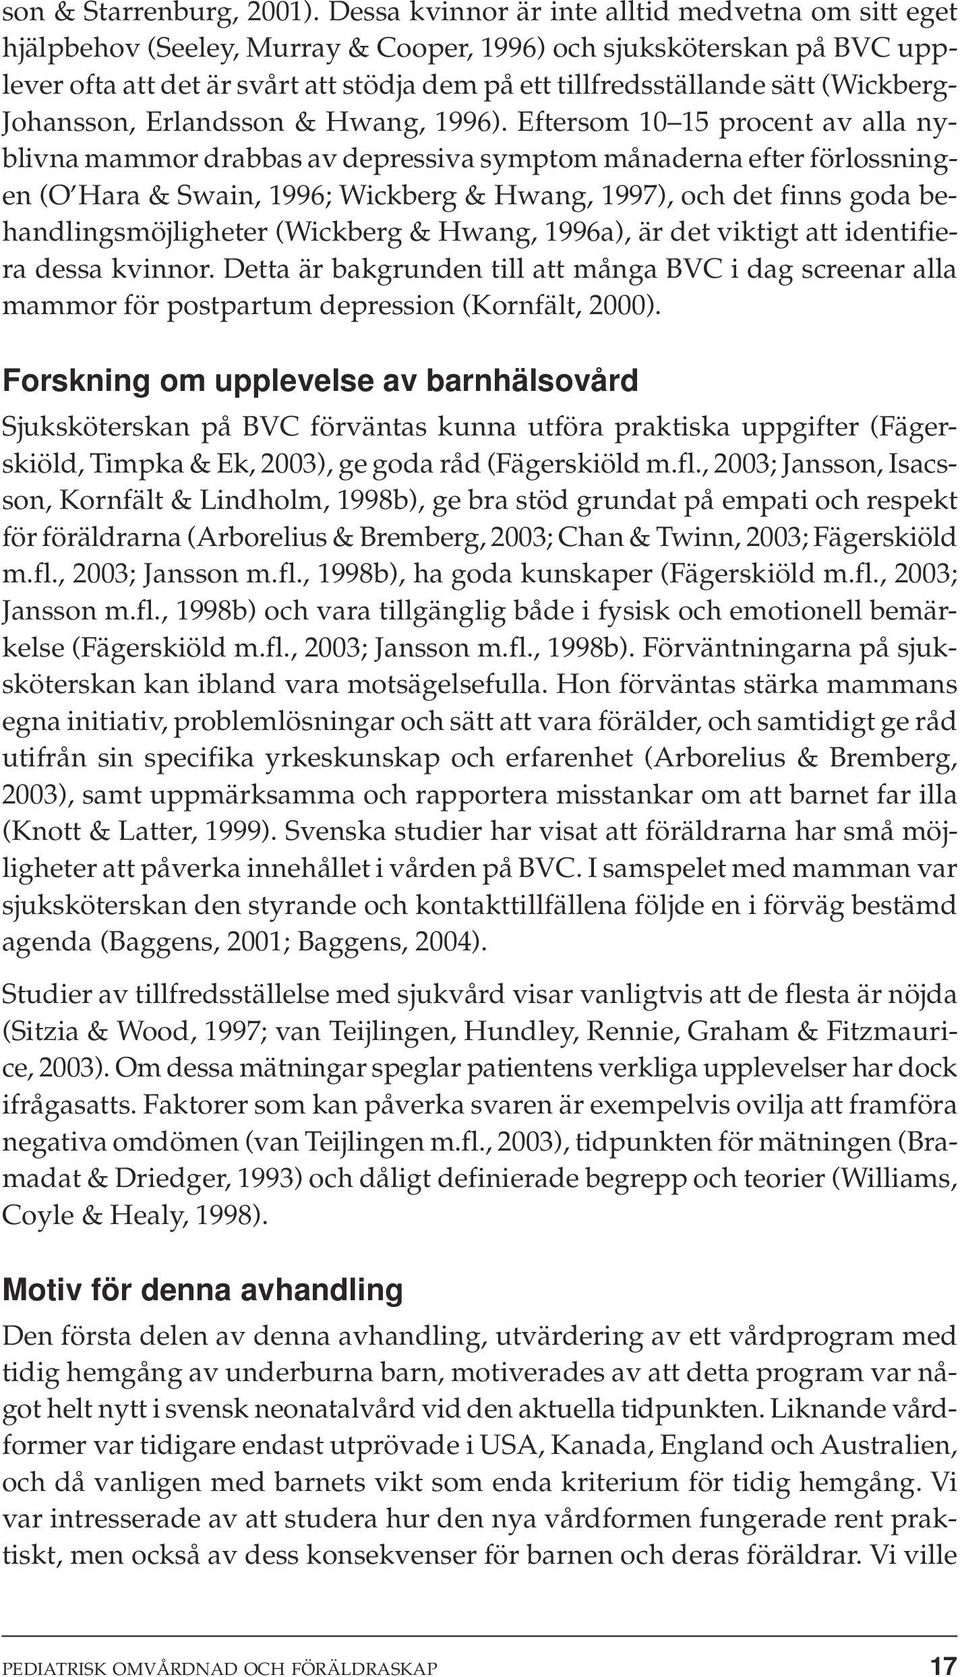 (Wickberg- Johansson, Erlandsson & Hwang, 1996).